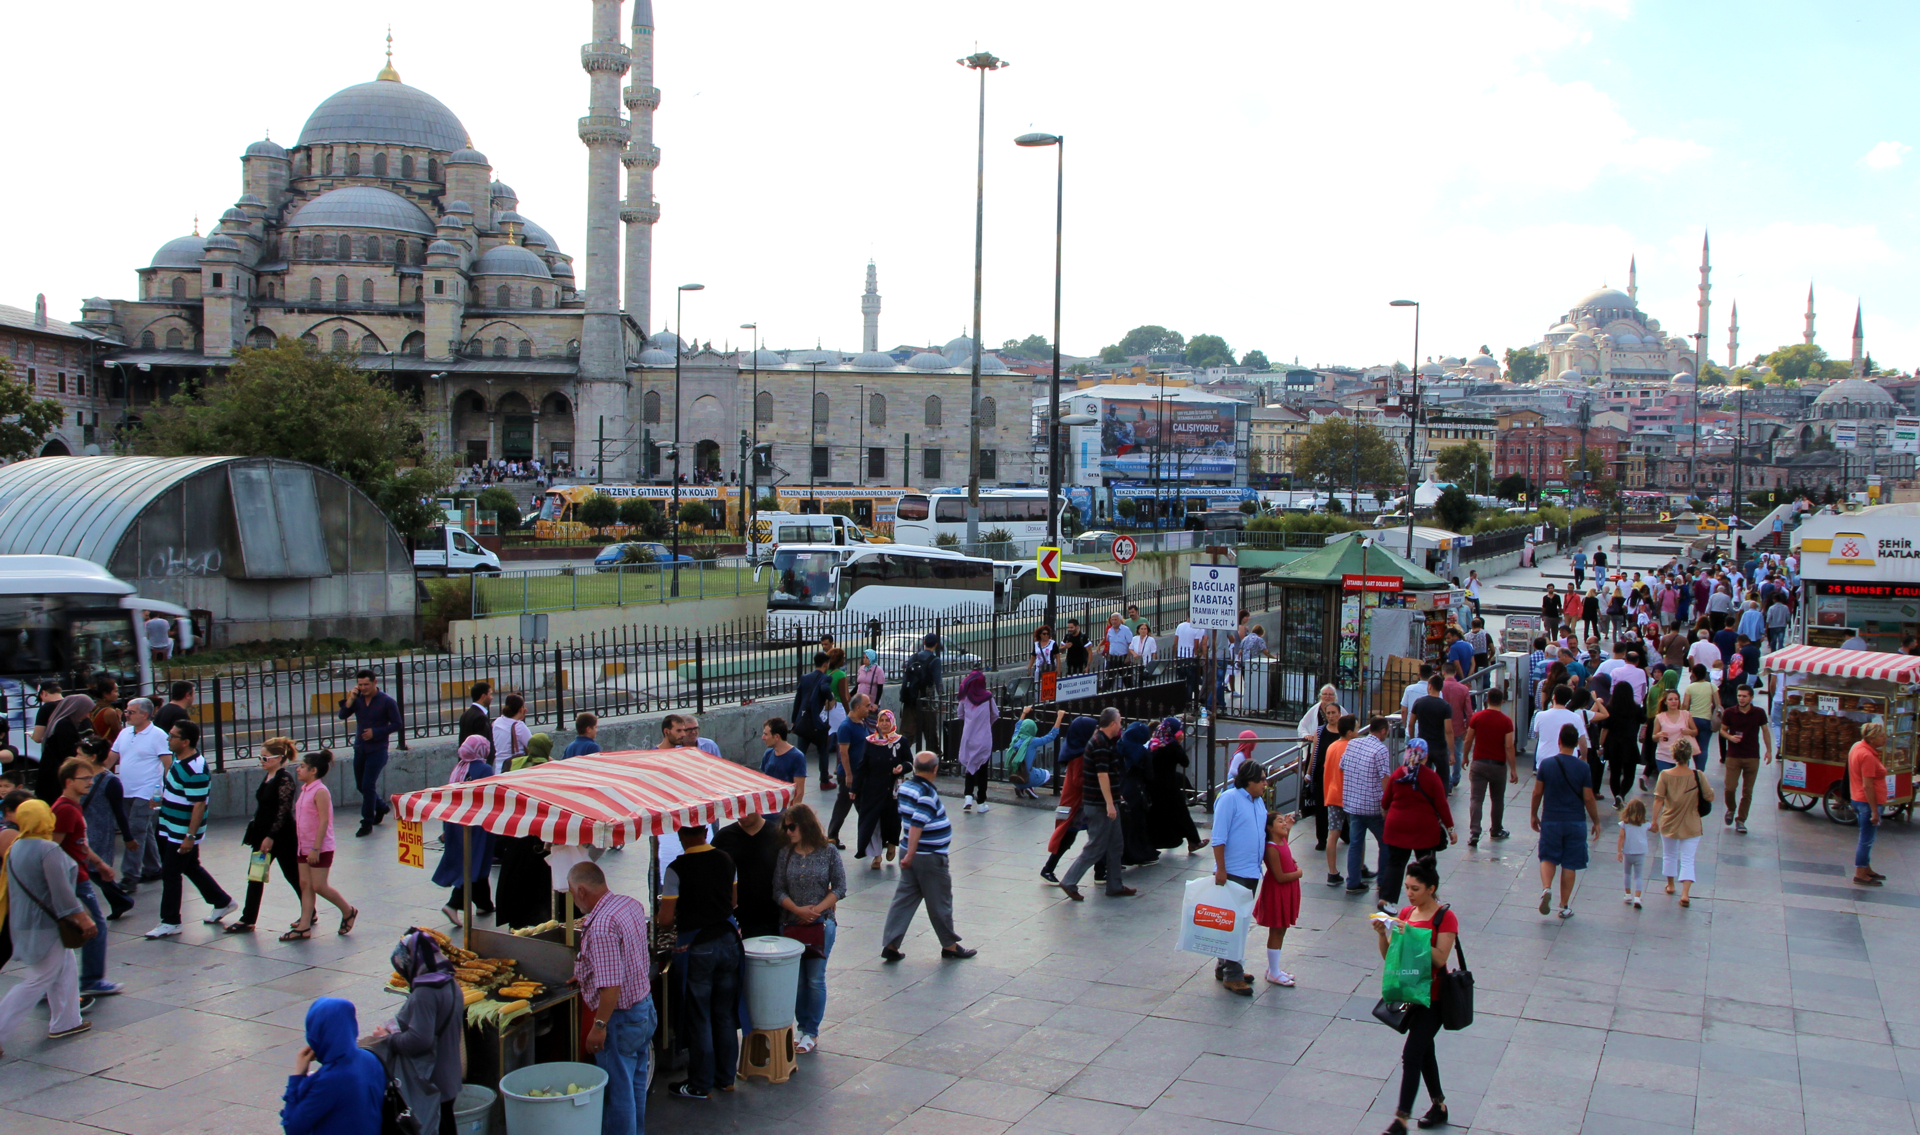 Quirlige City von Istanbul – Blick auf die Hagia Sophia und Blaue Moschee